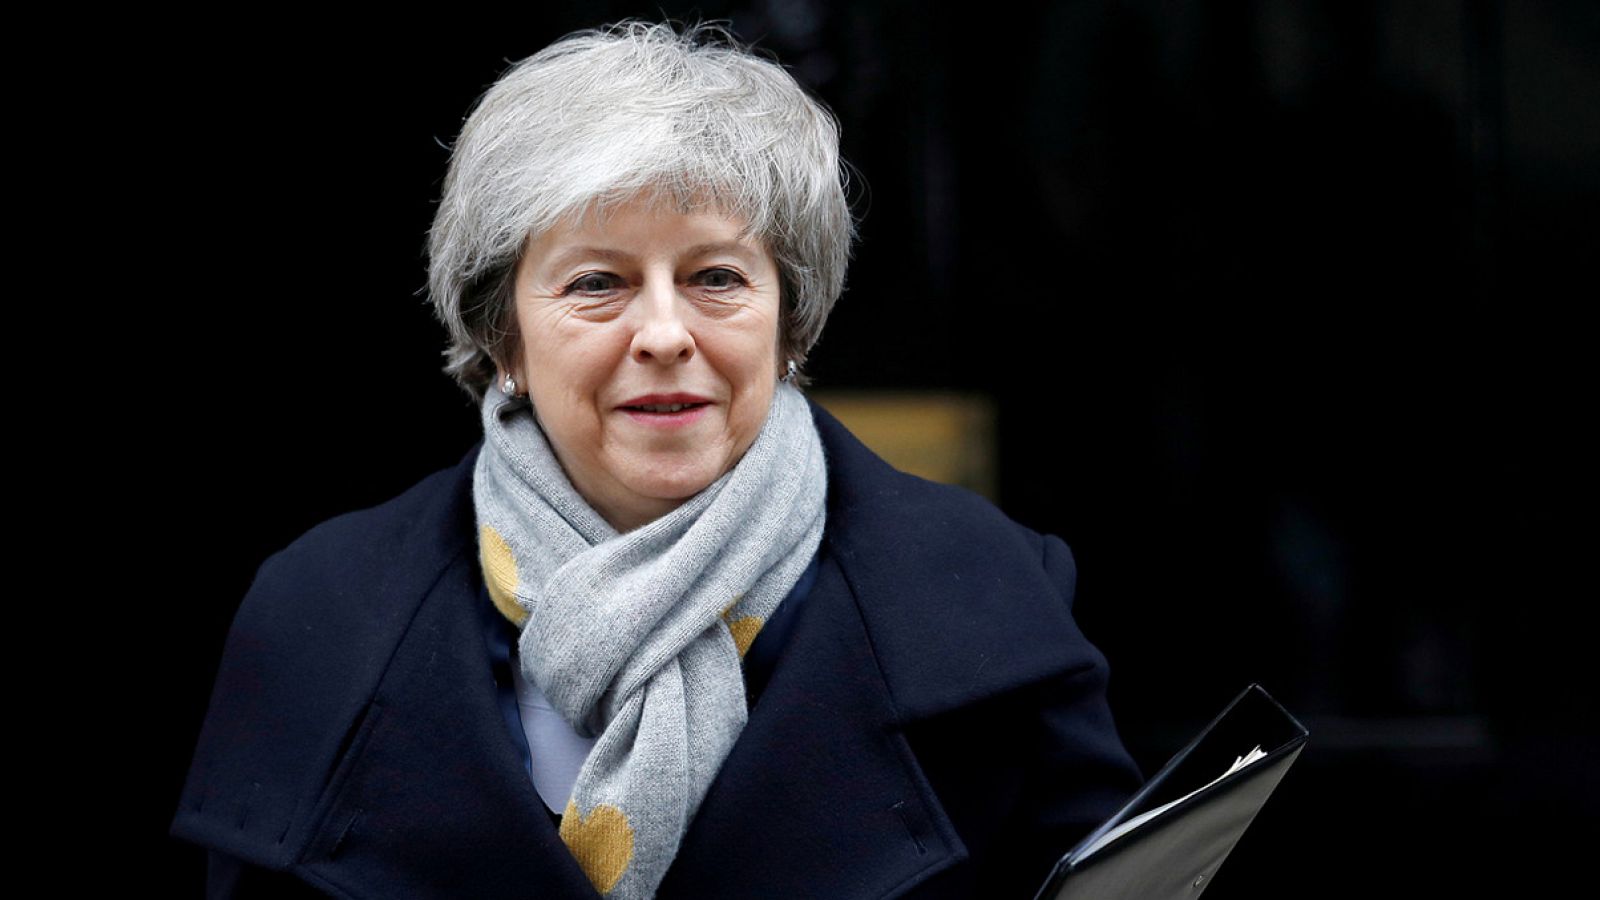 La dimisión de una ministra por desavenencias sobre el 'Brexit' aumenta la presión sobre Theresa May